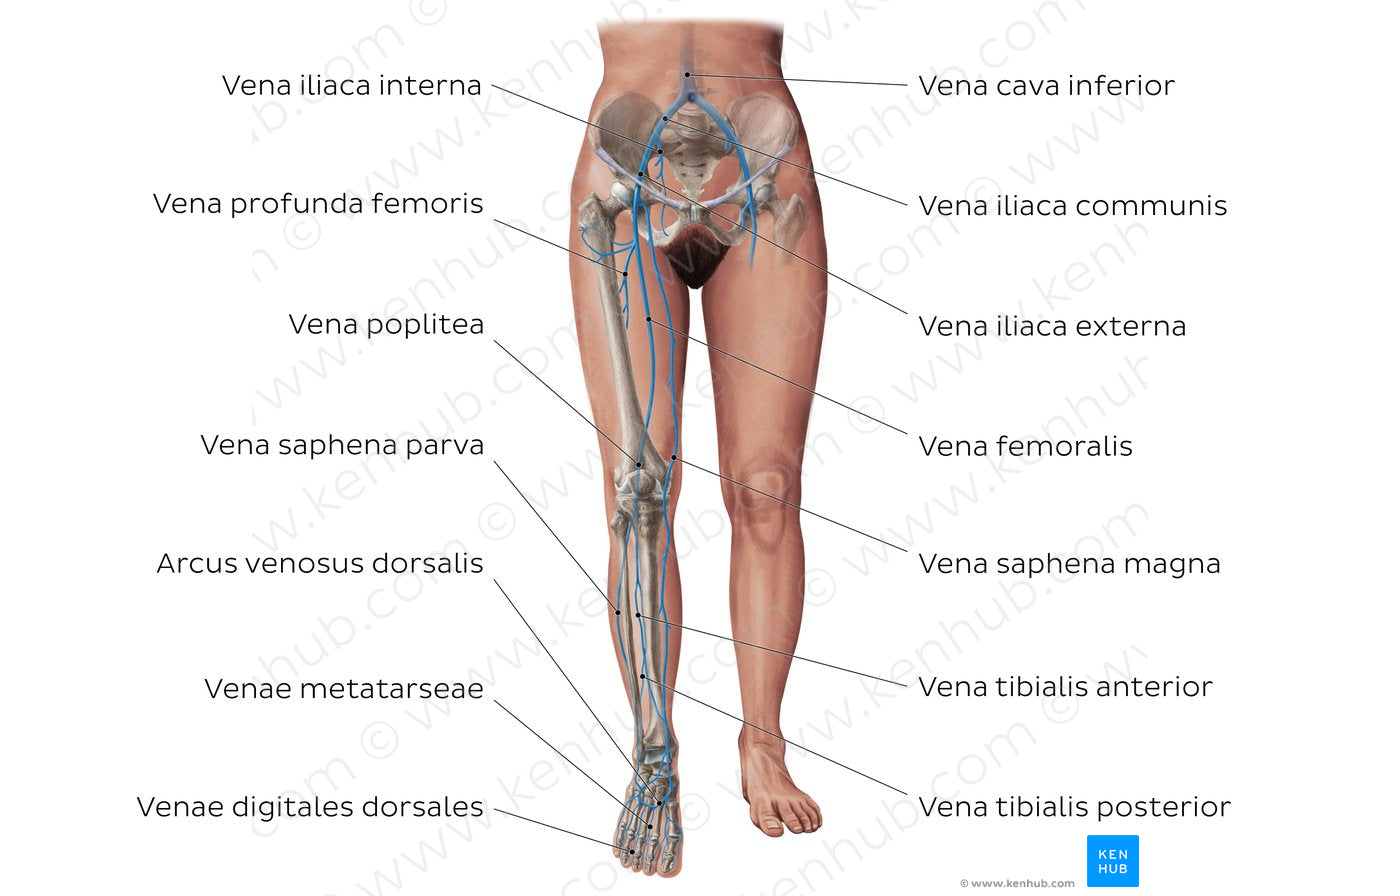 Main veins of the lower limb (Latin)